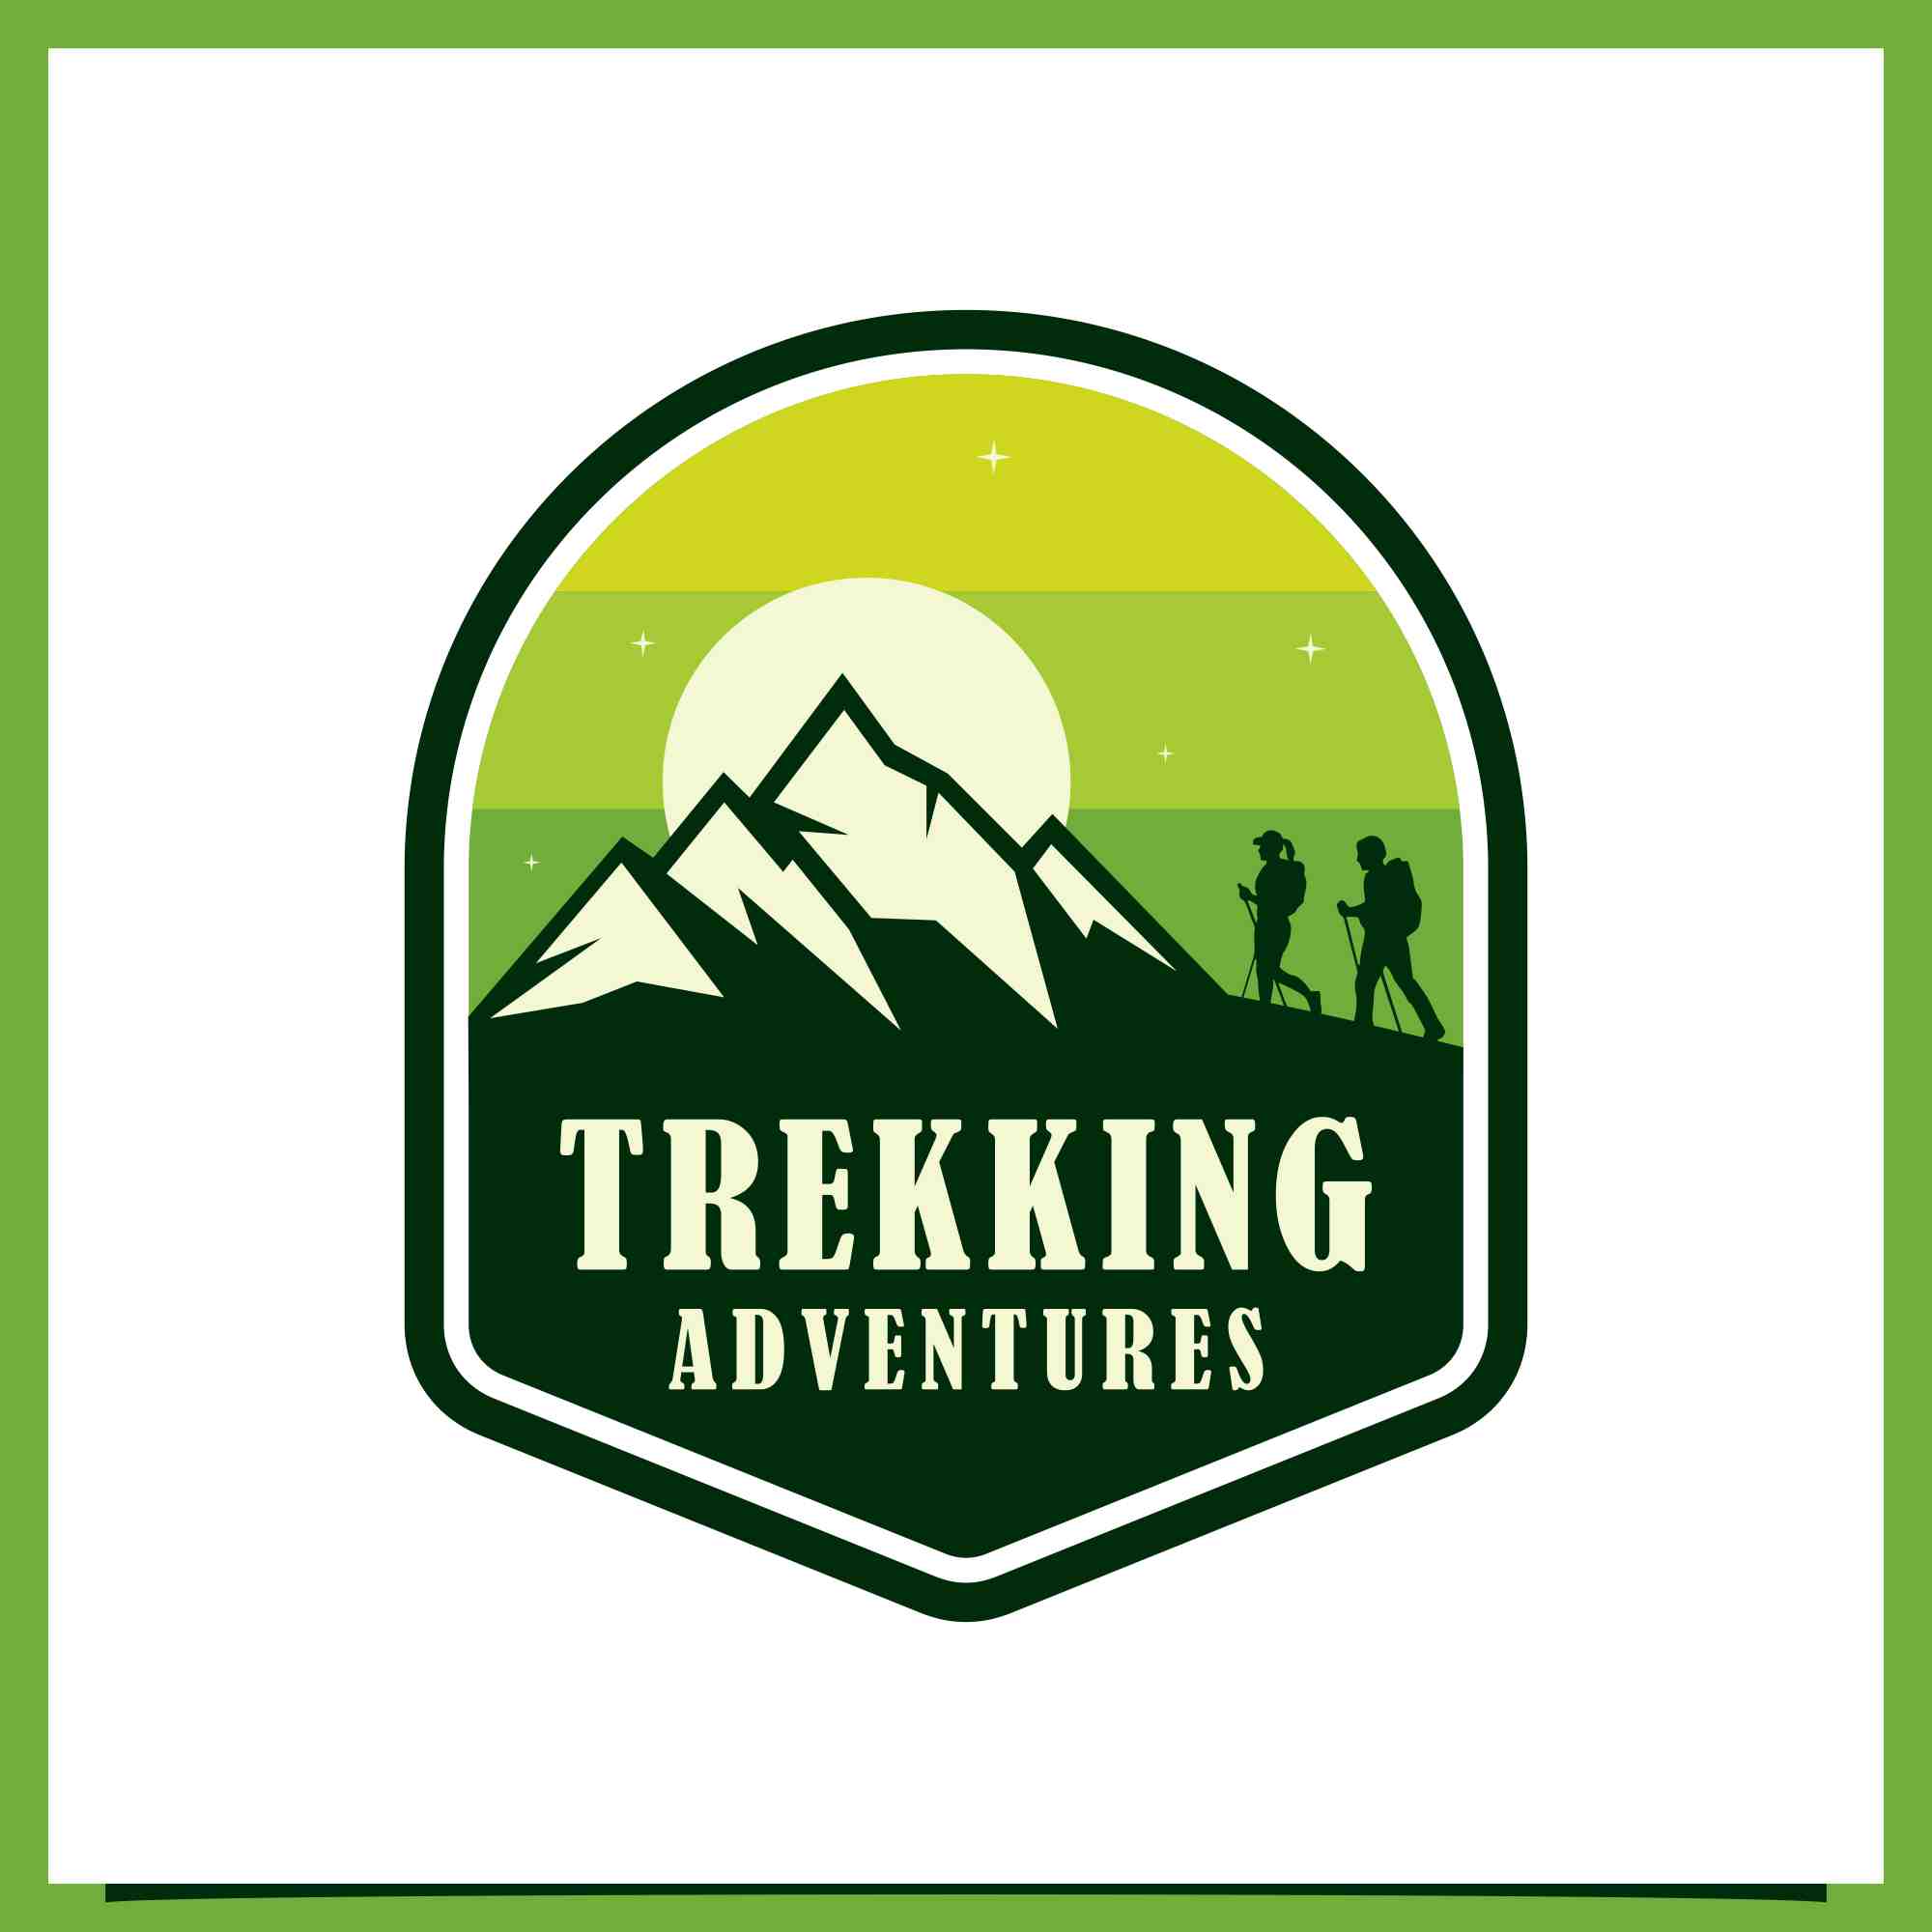 Soul trekking logo outdoorsy hiker